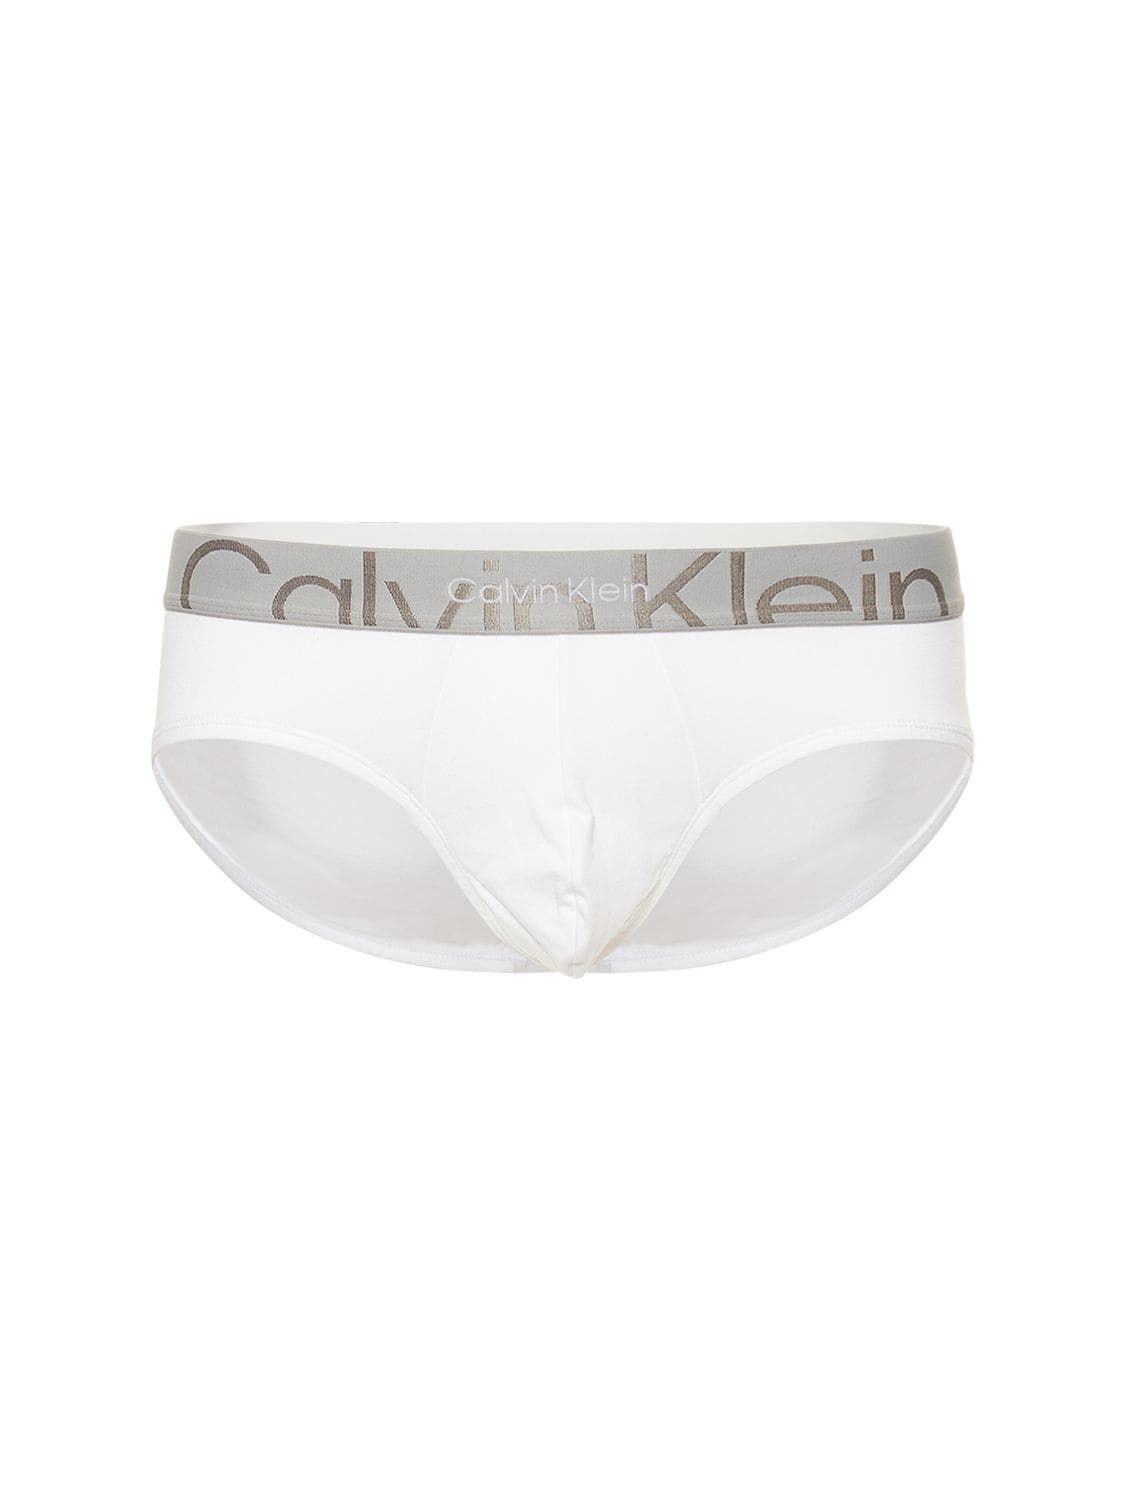 CALVIN KLEIN UNDERWEAR Logo Band Cotton Briefs